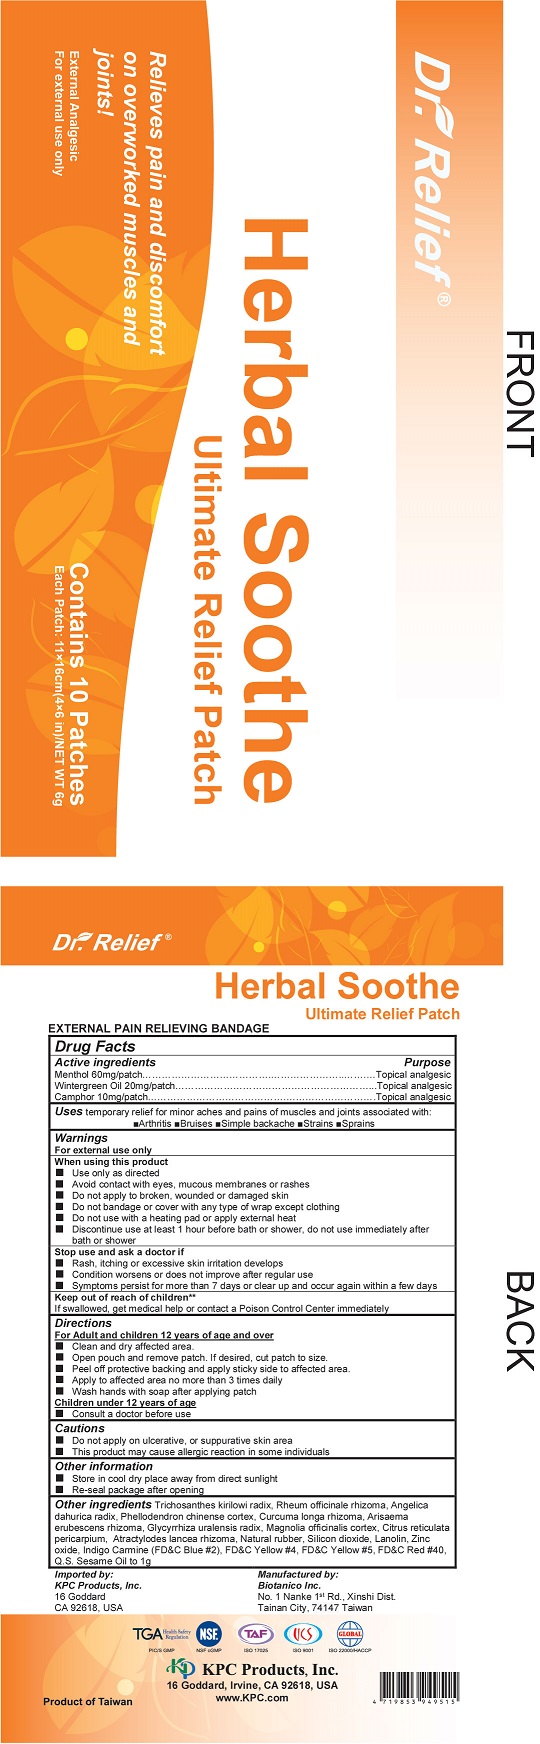 Image of DoctorRelief Label